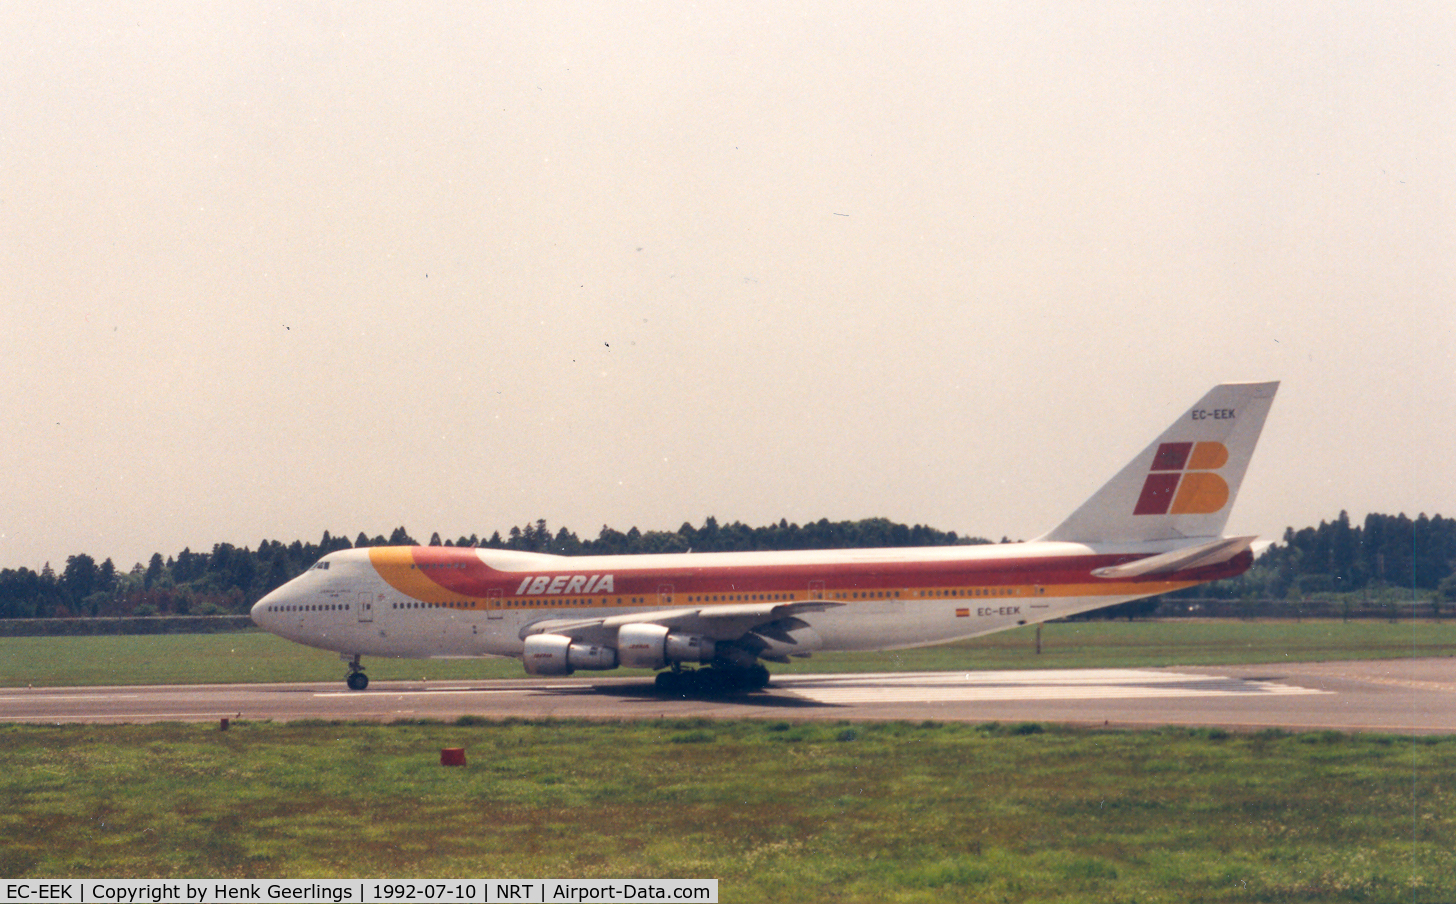 EC-EEK, 1988 Boeing 747-256B C/N 24071, Iberia